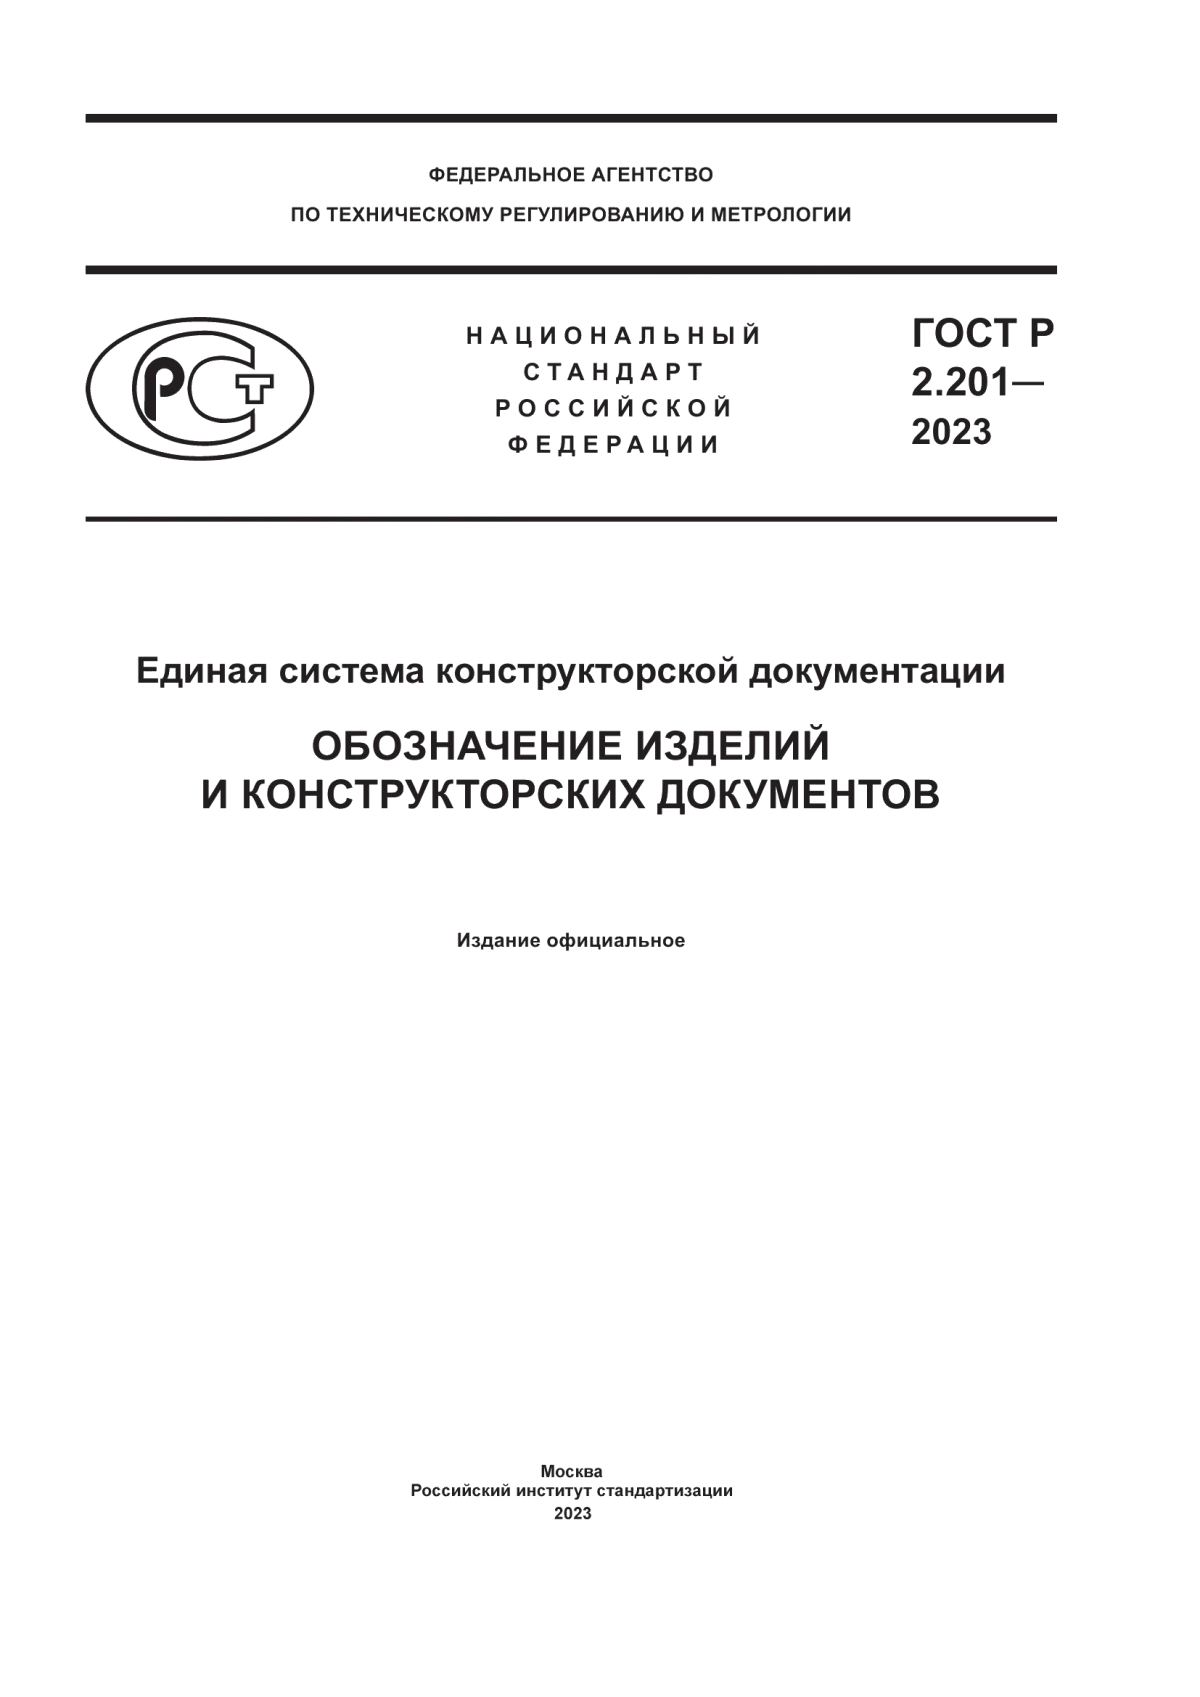 ГОСТ Р 2.201-2023 Единая система конструкторской документации. Обозначение изделий и конструкторских документов